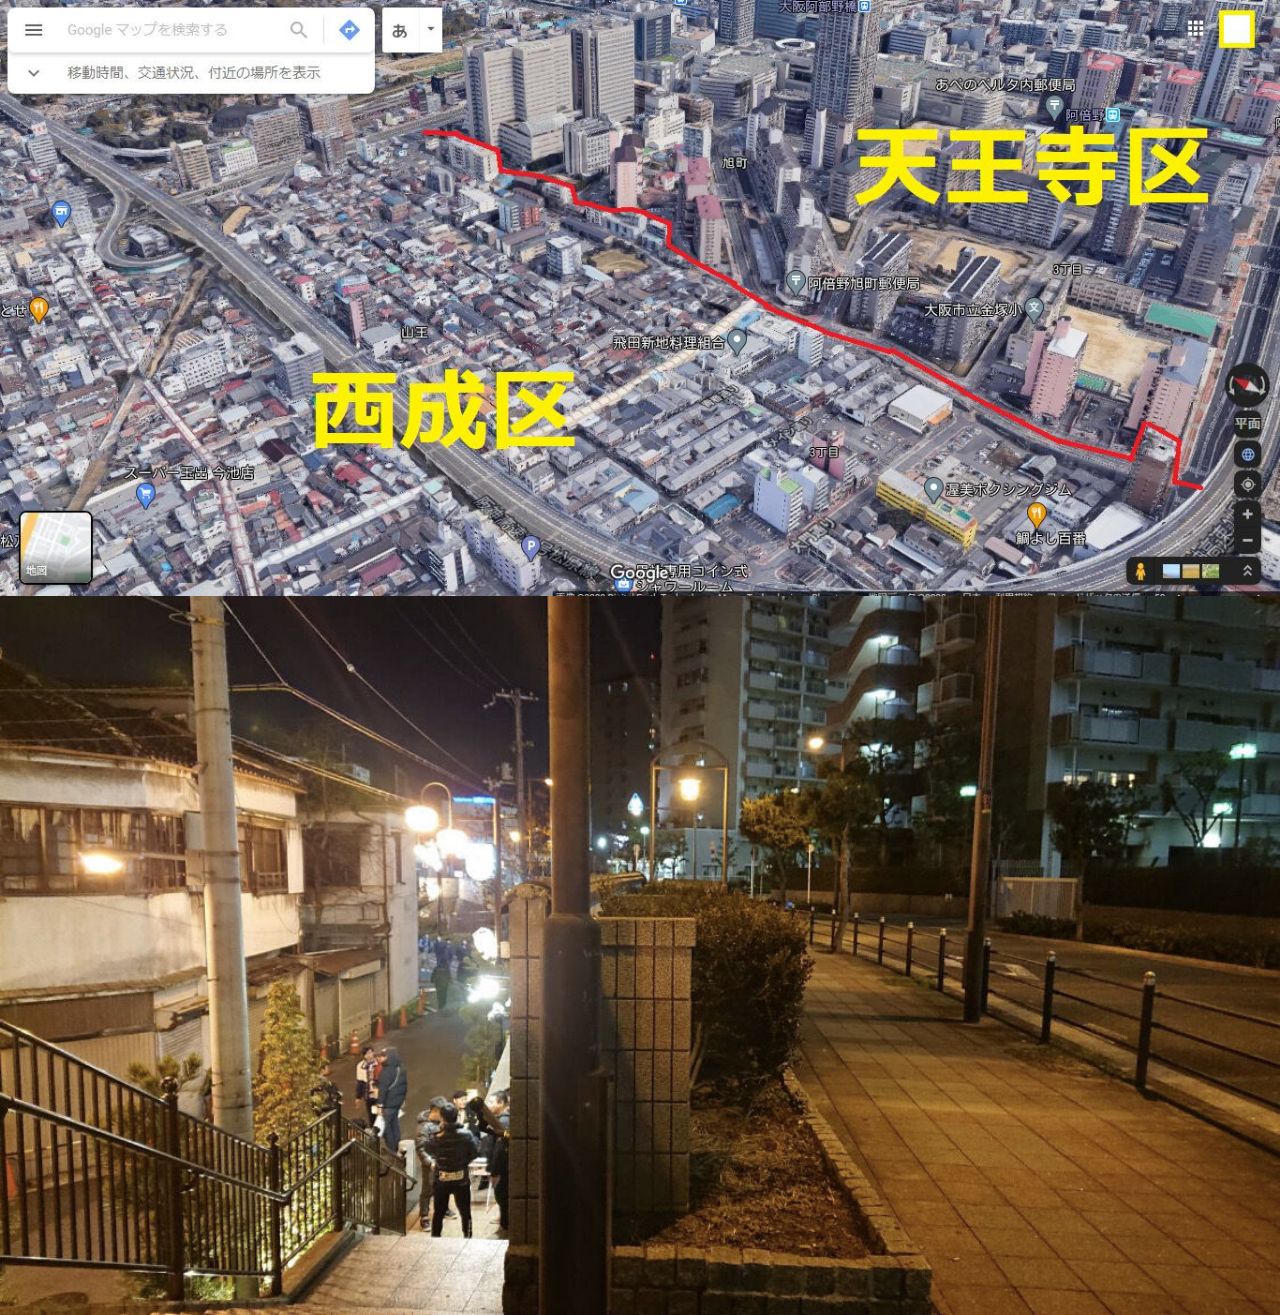 東京と大阪の都市規模のレベルが全然違うなと思った瞬間 \n_1